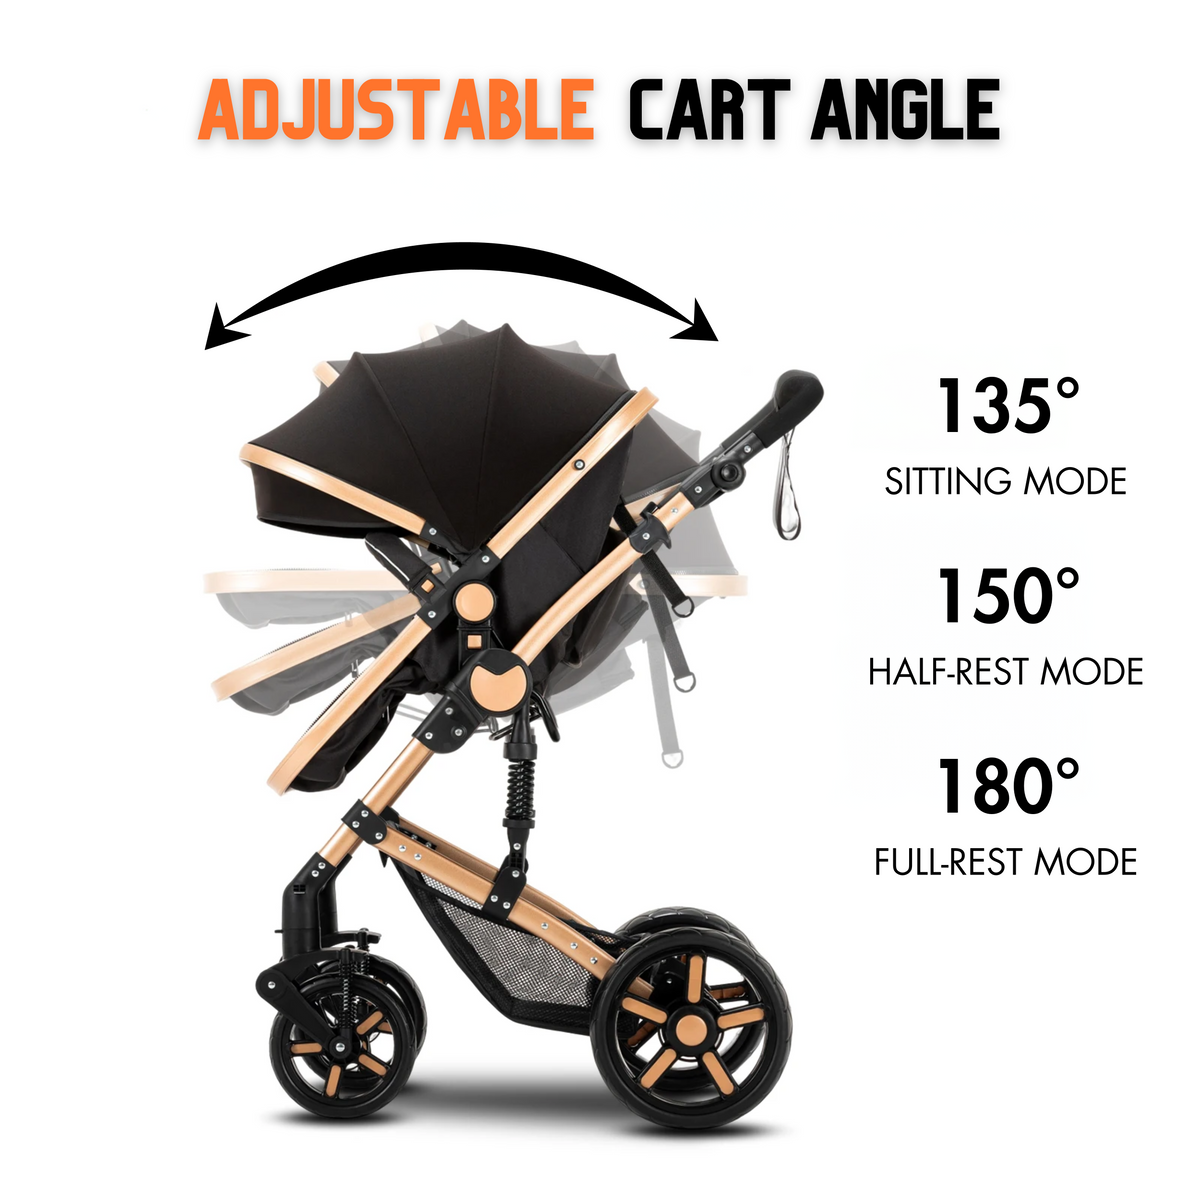 Adjustable cart angle